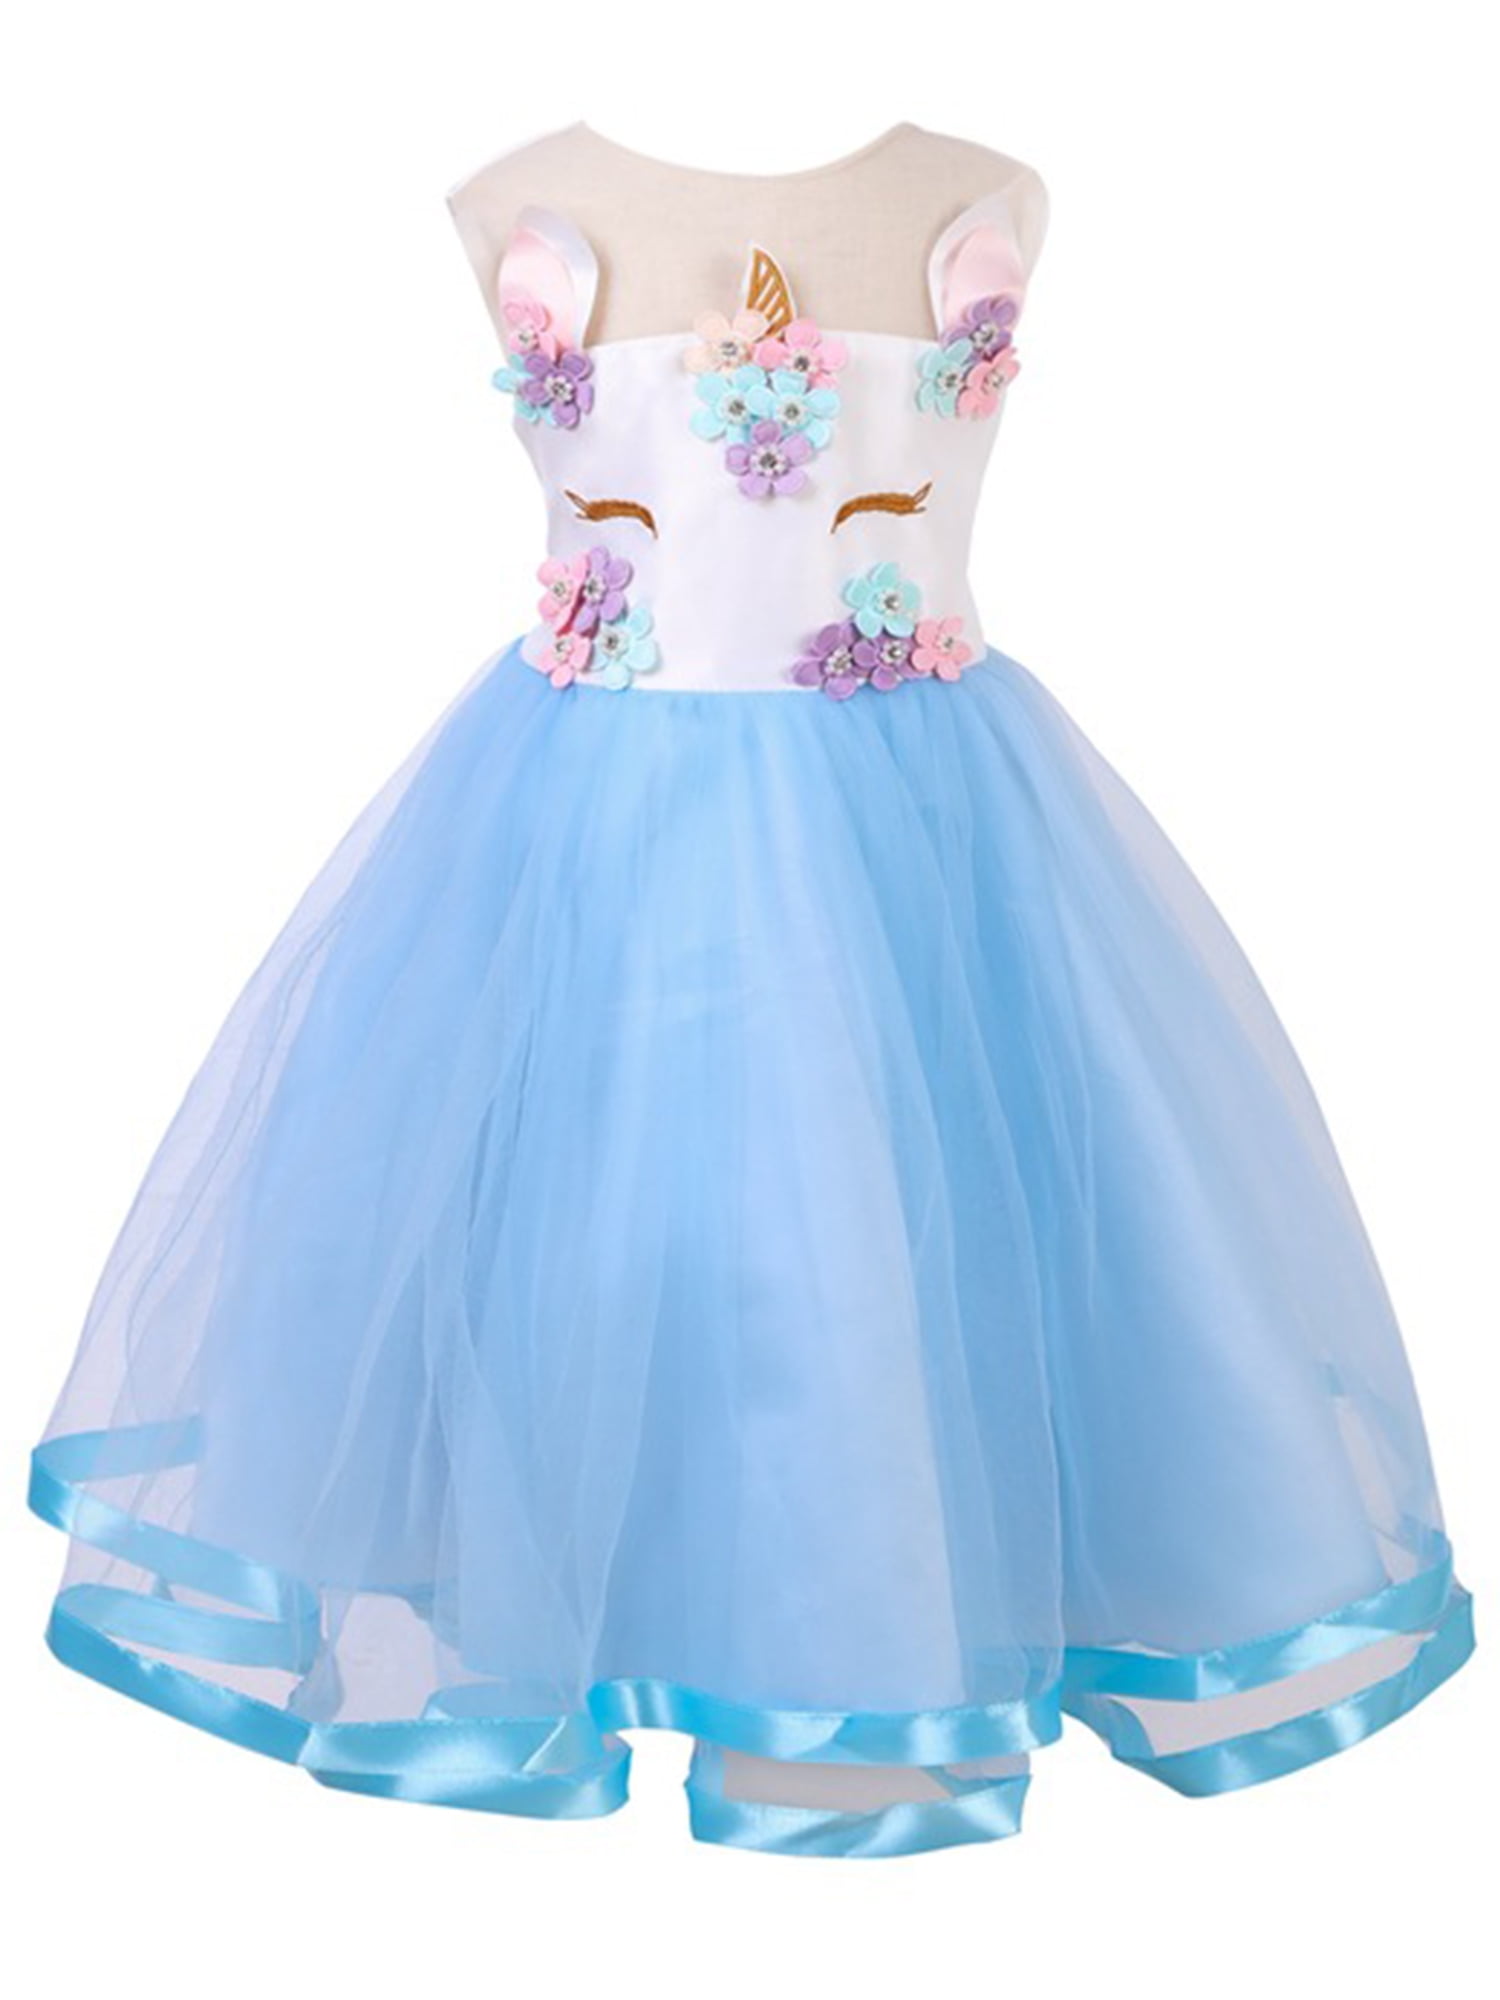 Childrens Girls Rainbow Unicorn Ruffled Tutu Tulle Dress Gown Costume 2-10T 39 